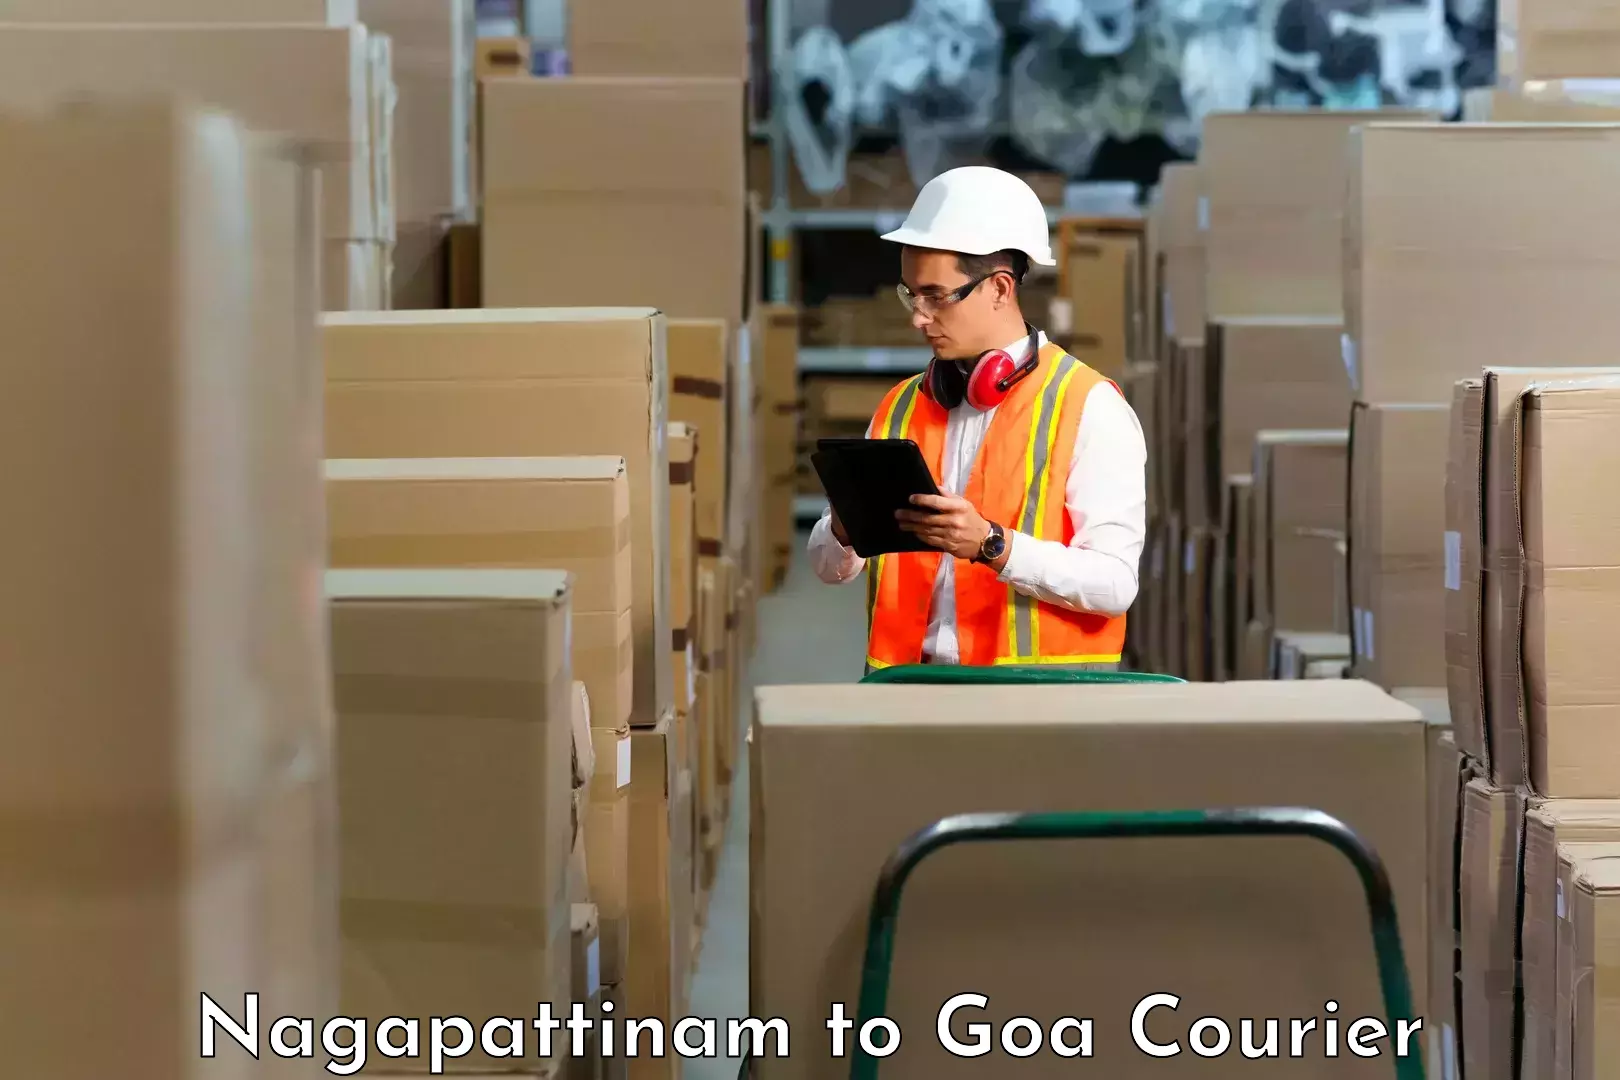 Courier service innovation Nagapattinam to Mormugao Port